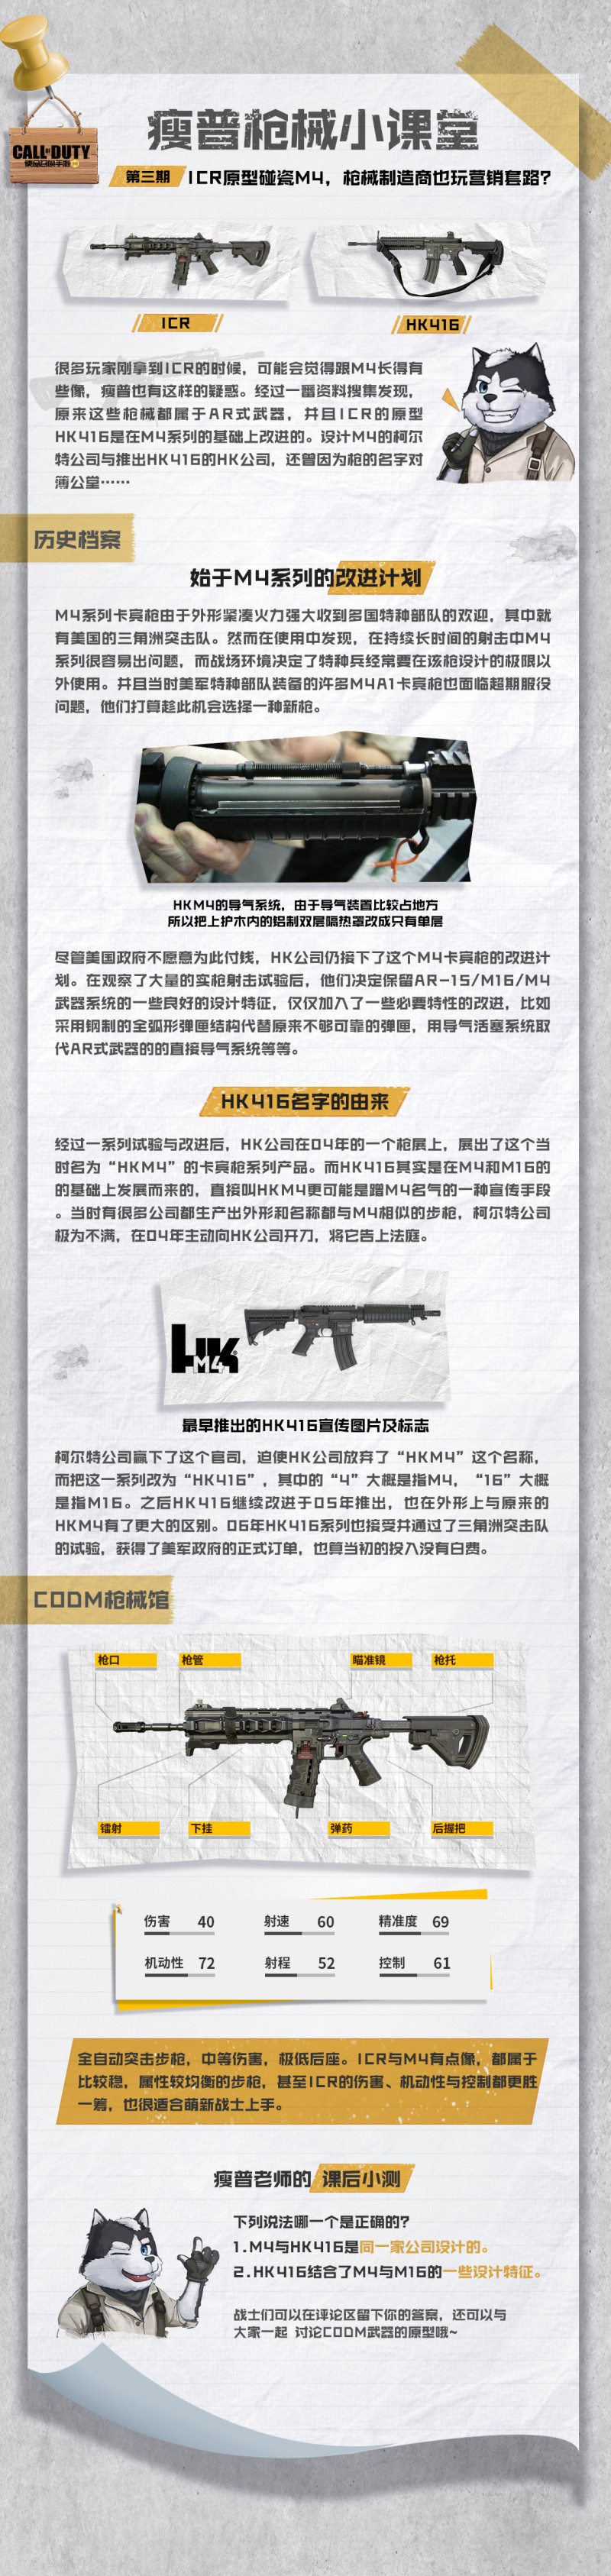 【枪械小课堂】第三期 ICR原型枪碰瓷M4？